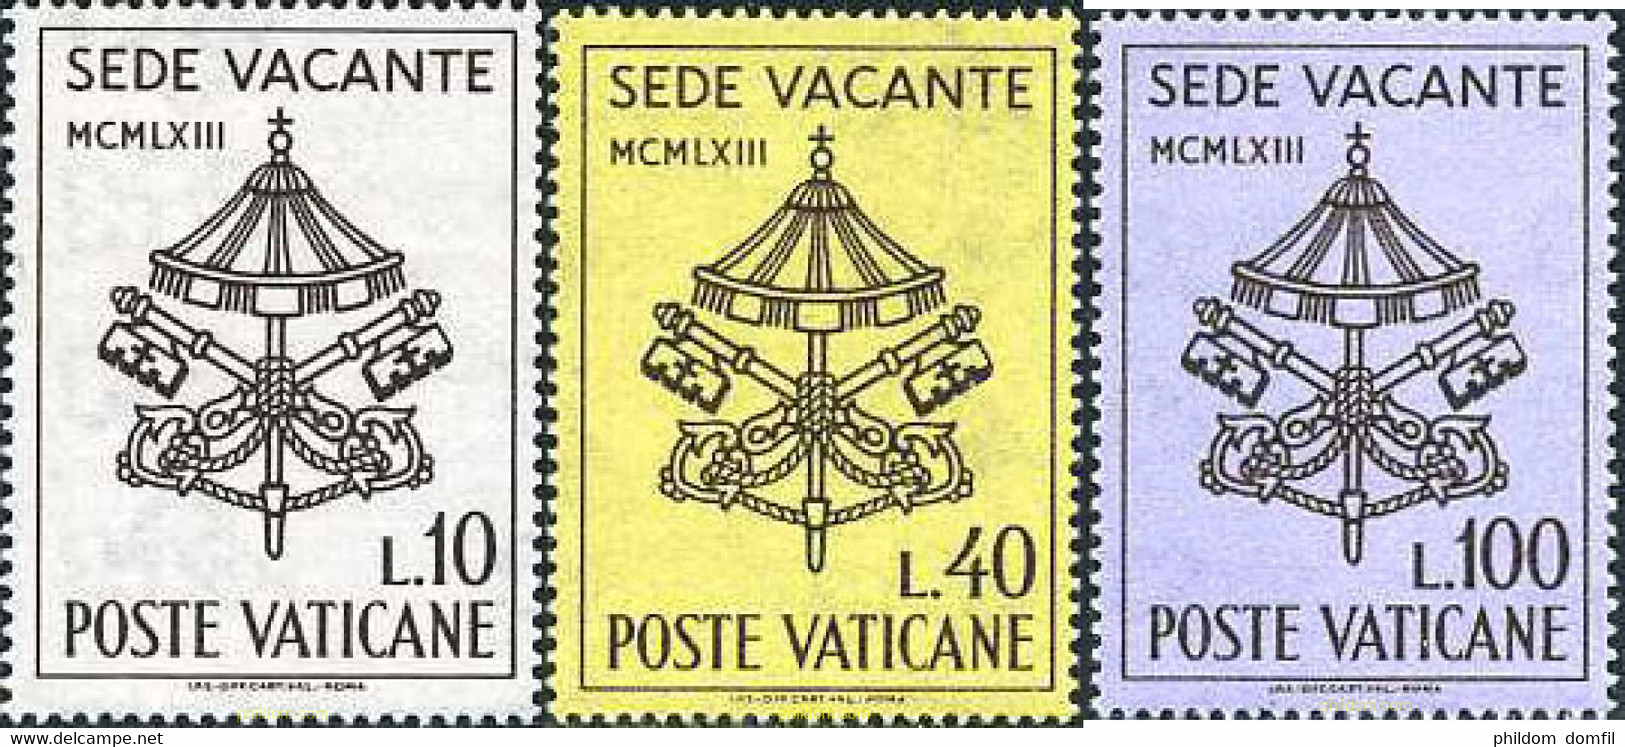 116065 MNH VATICANO 1963 SEDE VACANTE - Usados